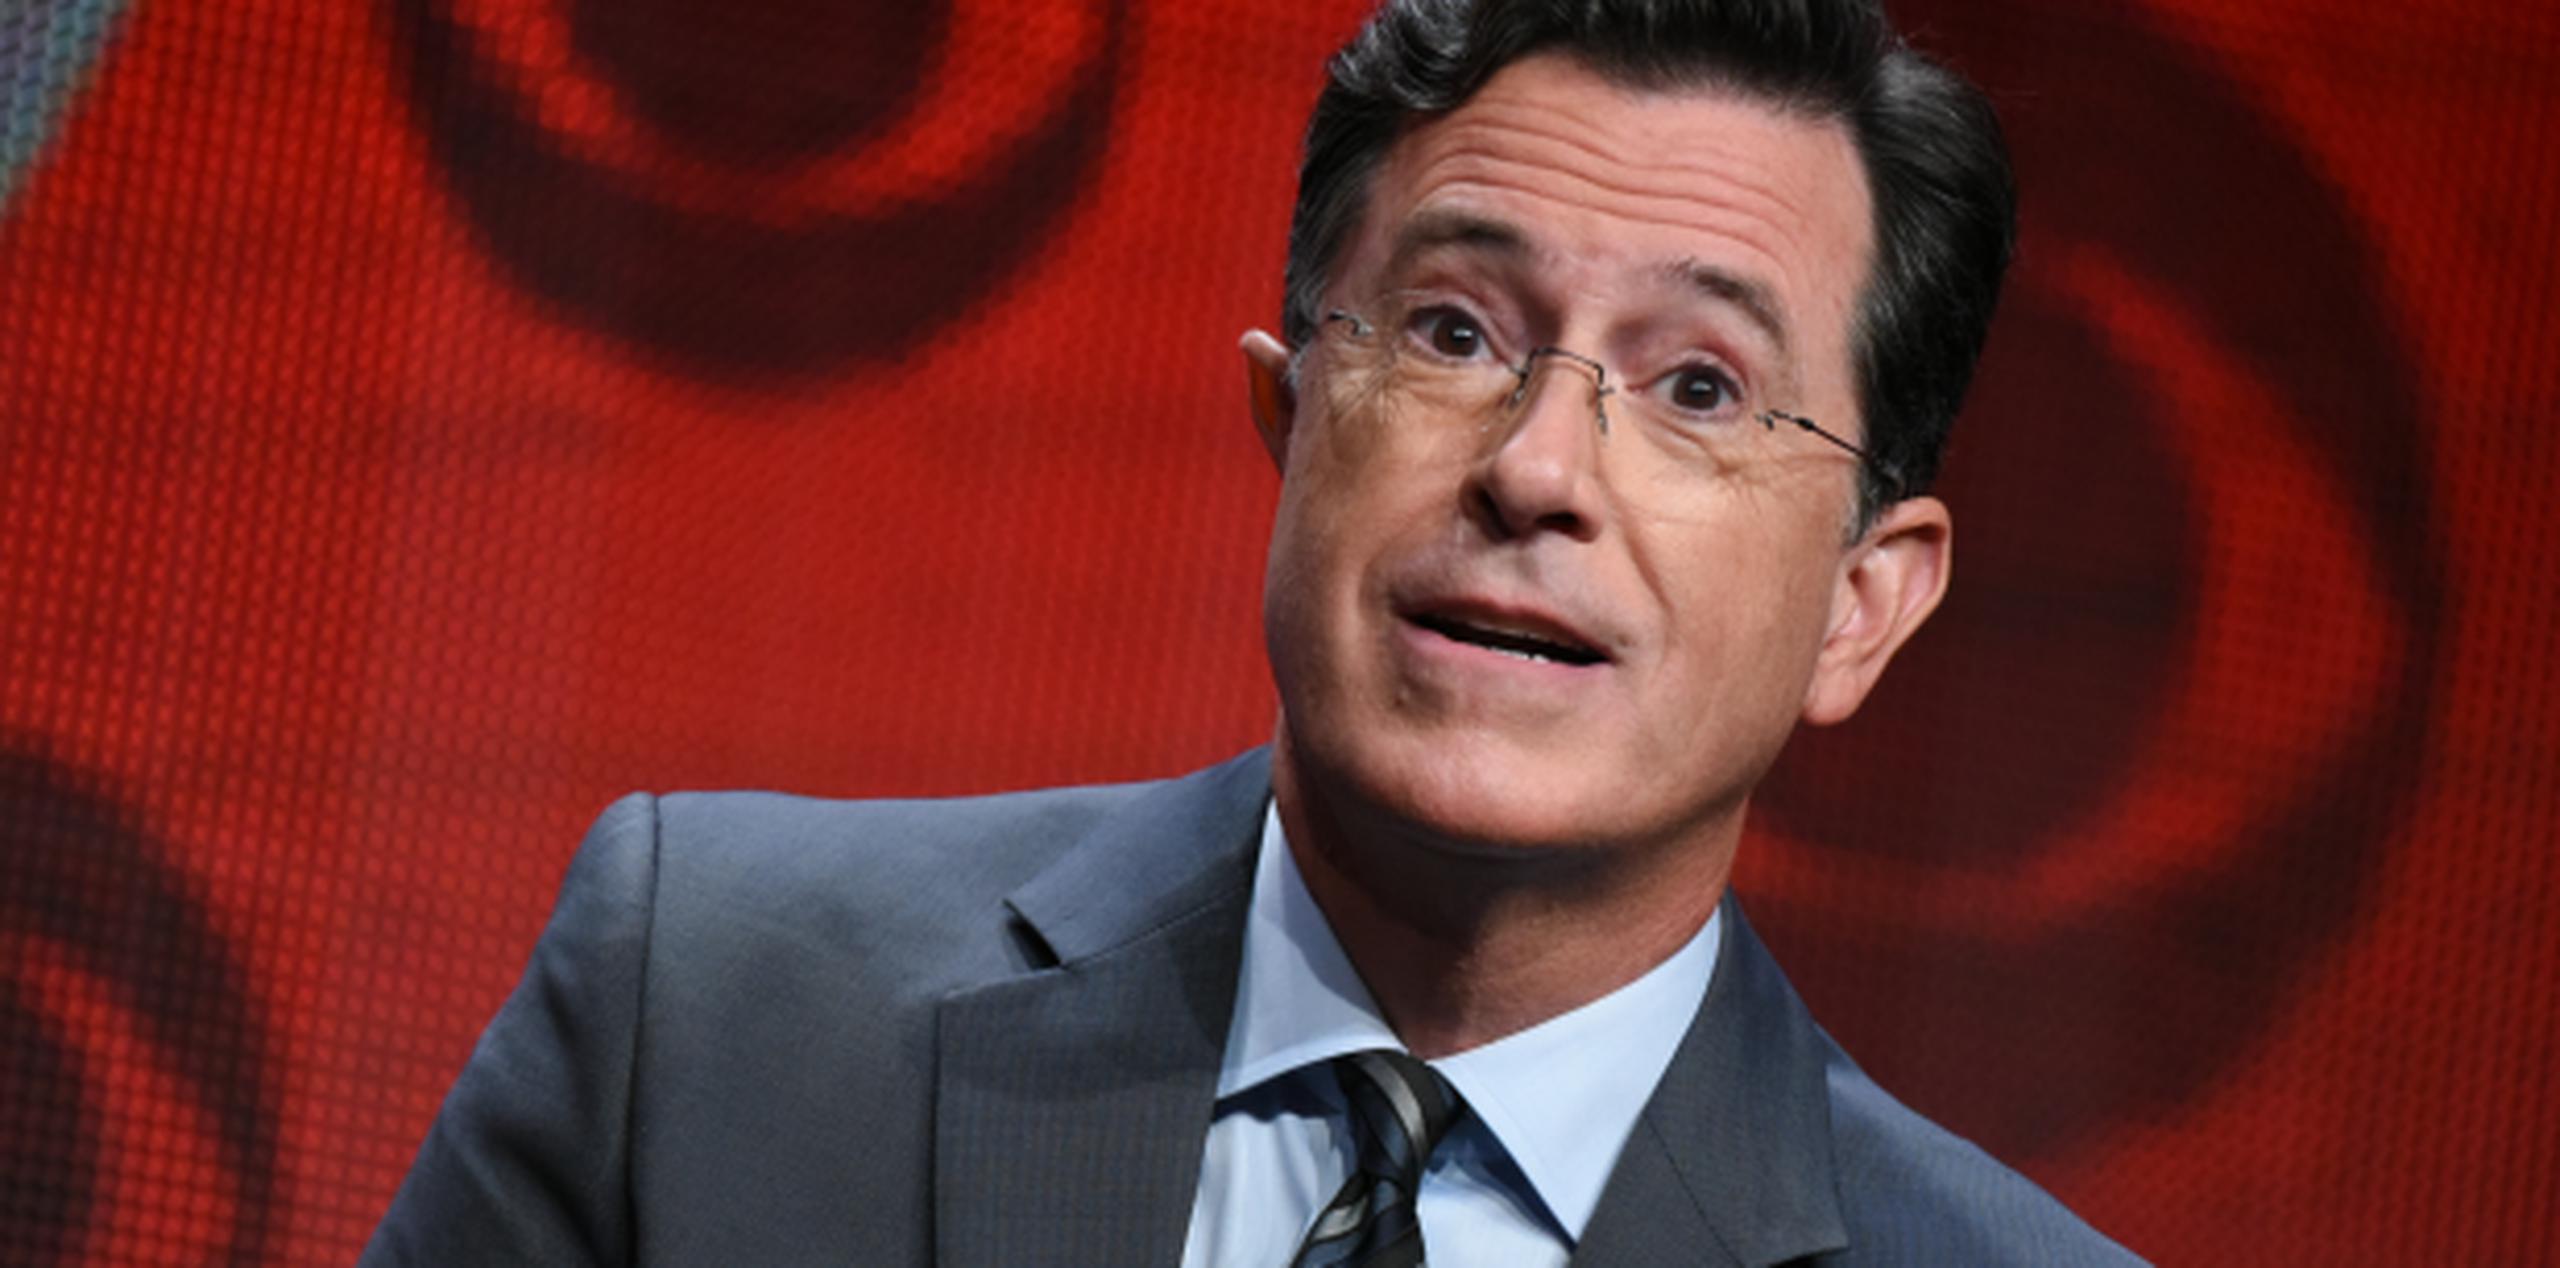 La CBS incluso le está dando a Colbert tiempo extra: el show terminará nueve minutos más tarde que lo usual. (Archivo)